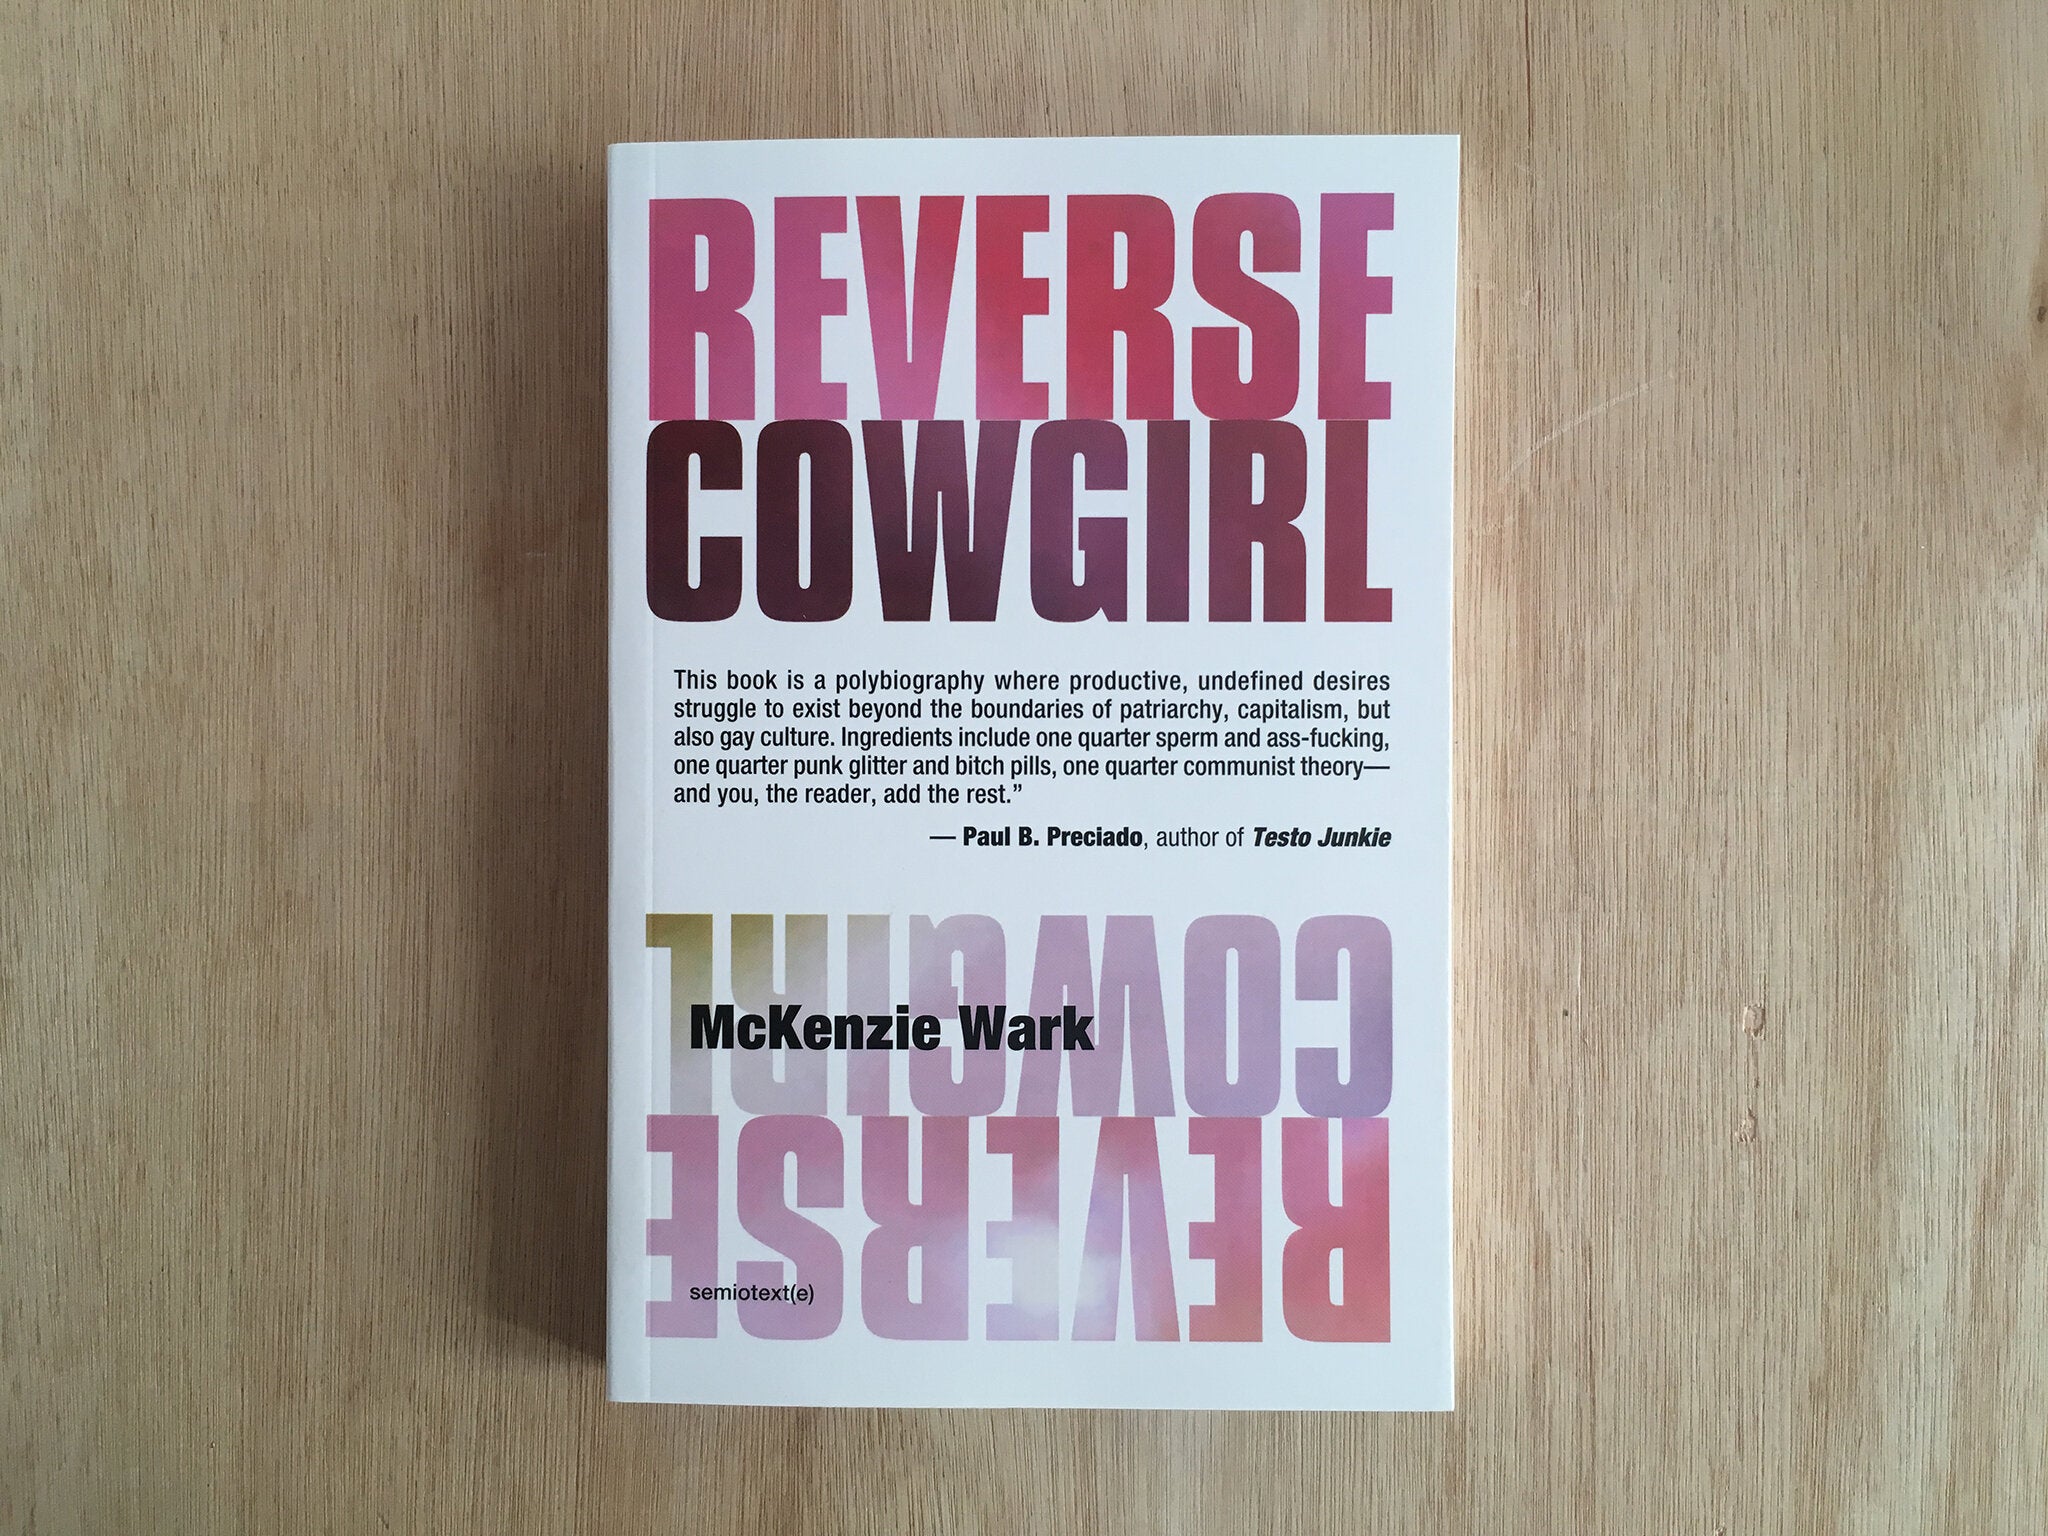 REVERSE COWGIRL by McKenzie Wark